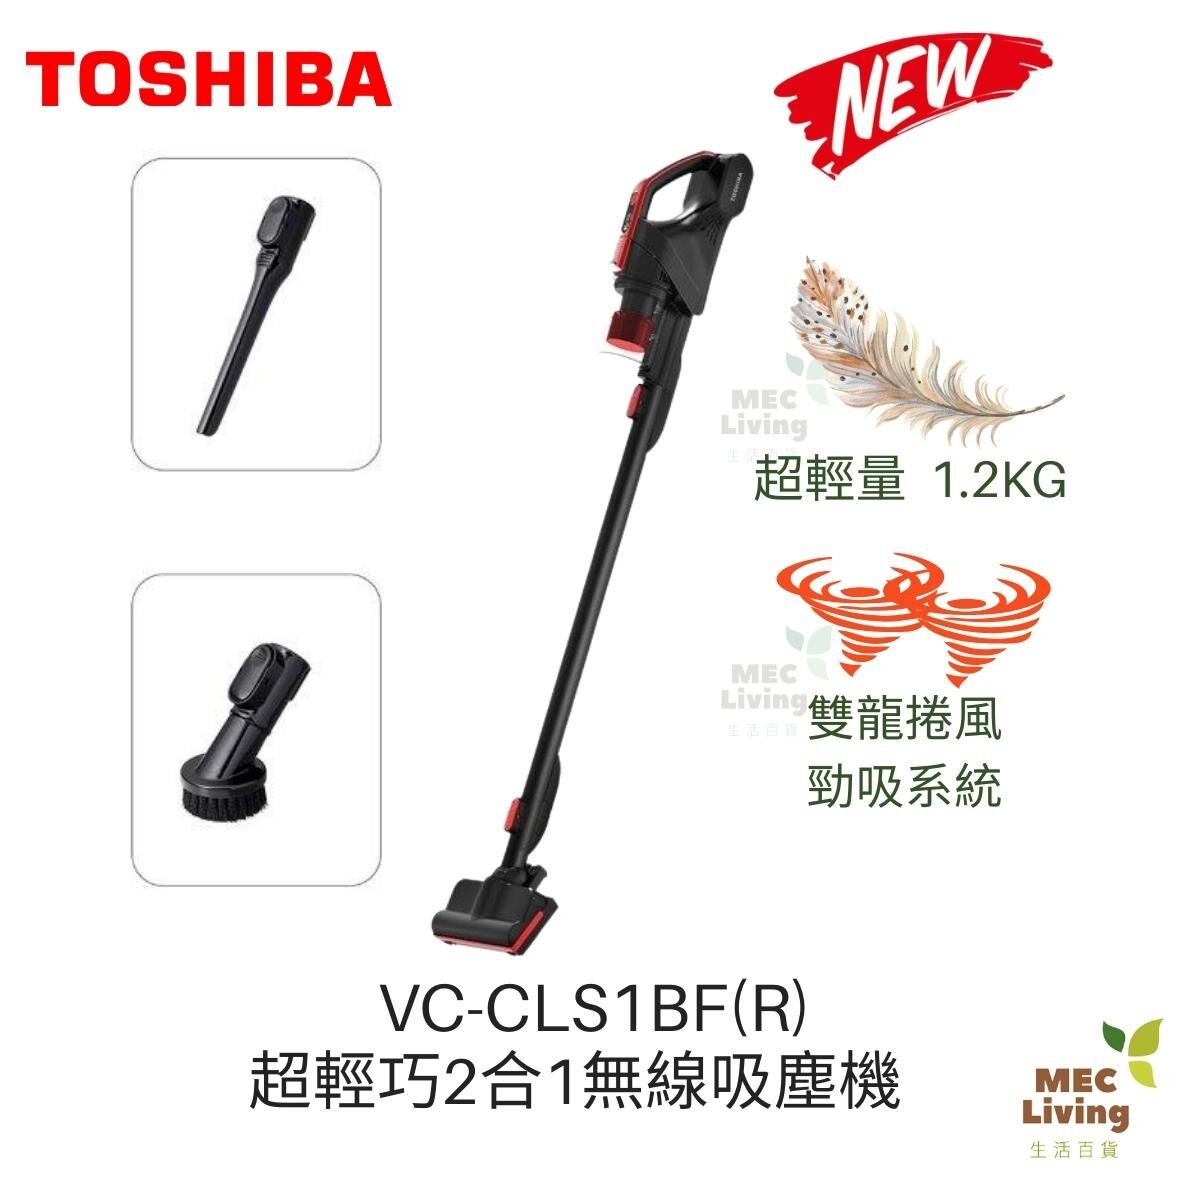 東芝| VC-CLS1BF(R) 超輕巧2合1無線吸塵機(原裝行貨) | HKTVmall 香港